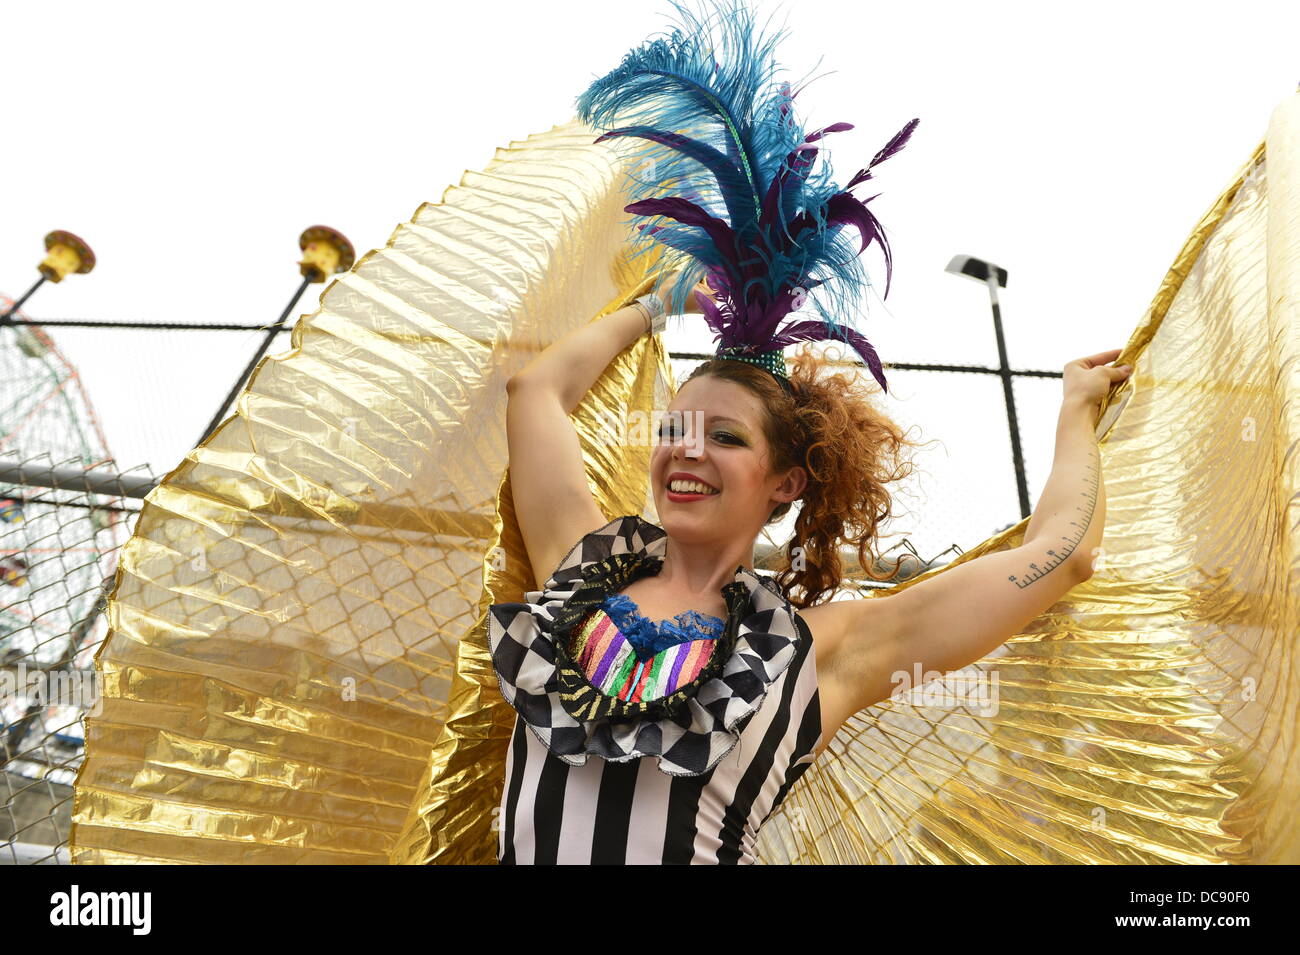 Brooklyn, New York, USA. 10 août 2013. À Coney Island, des échasses KAE BURKE, Dame de cirque, porte une robe de soirée et costume cape d'or, haute comme elle marche sur des échasses. Banque D'Images